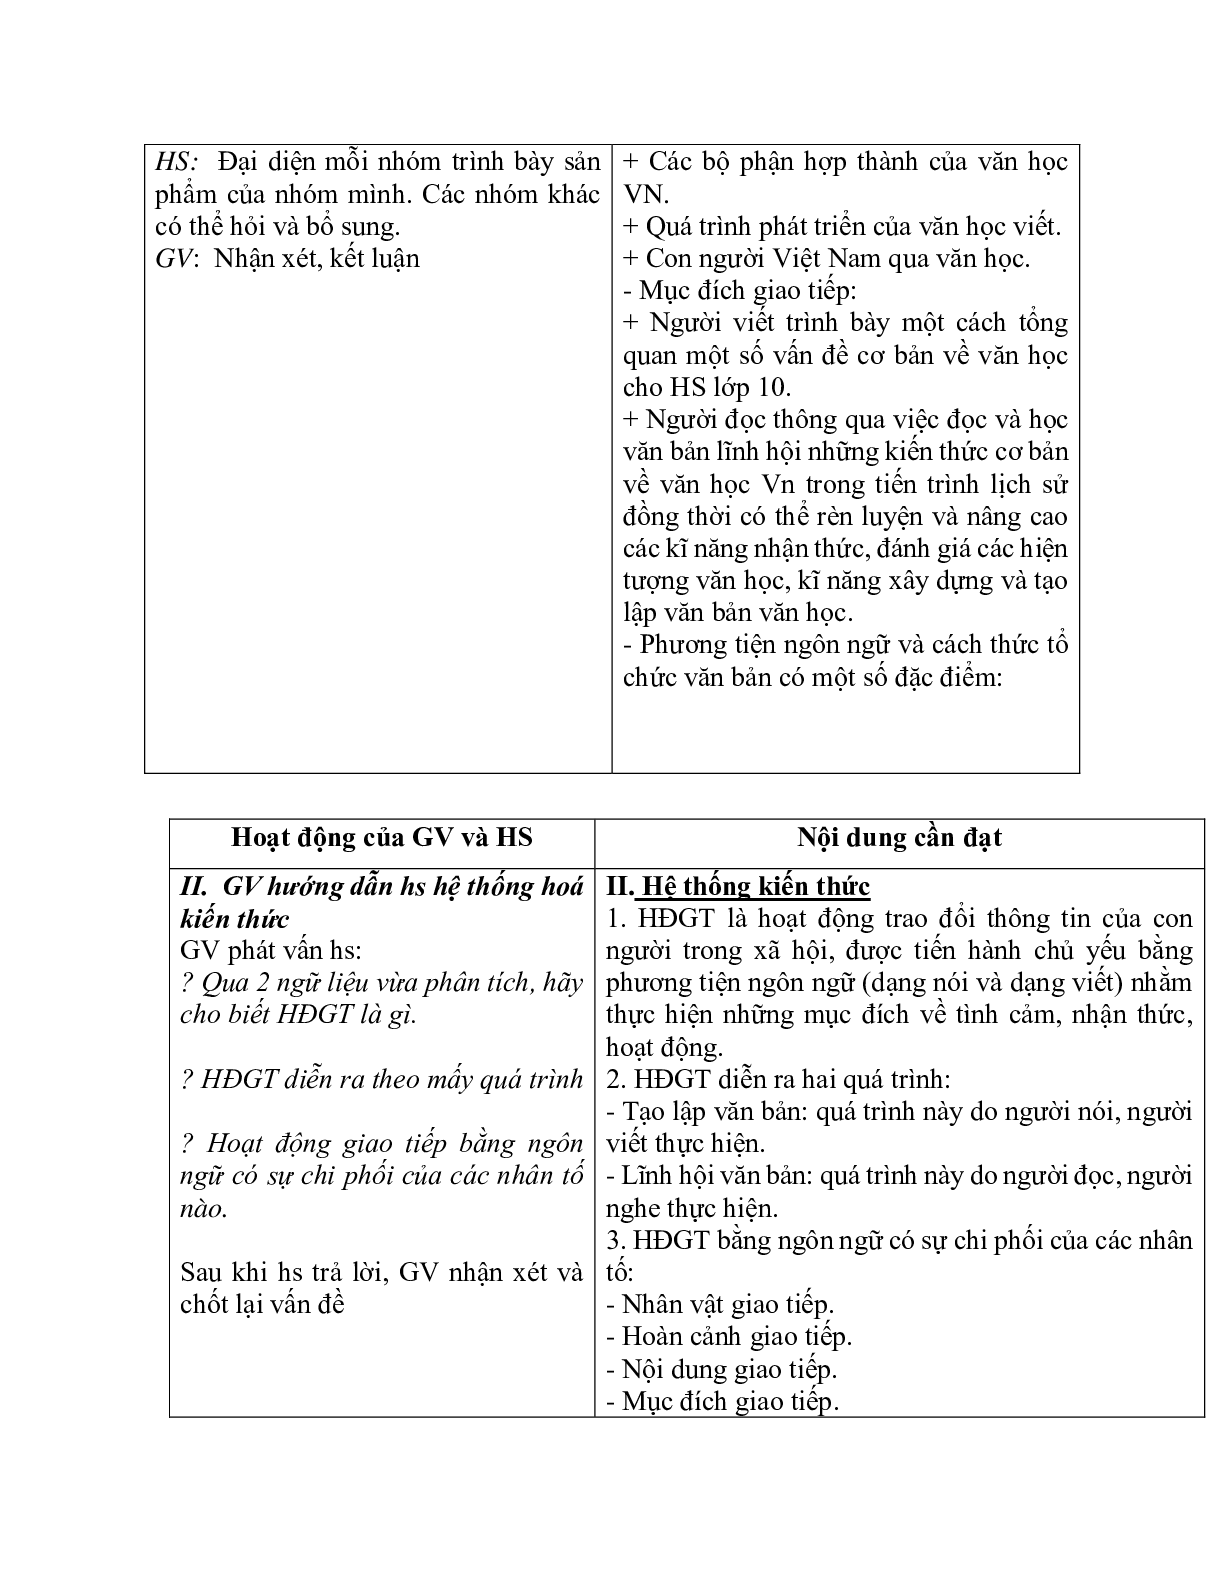 Giáo án ngữ văn lớp 10 Tiết 5, 6: Hoạt động giao tiếp bằng ngôn ngữ (trang 4)